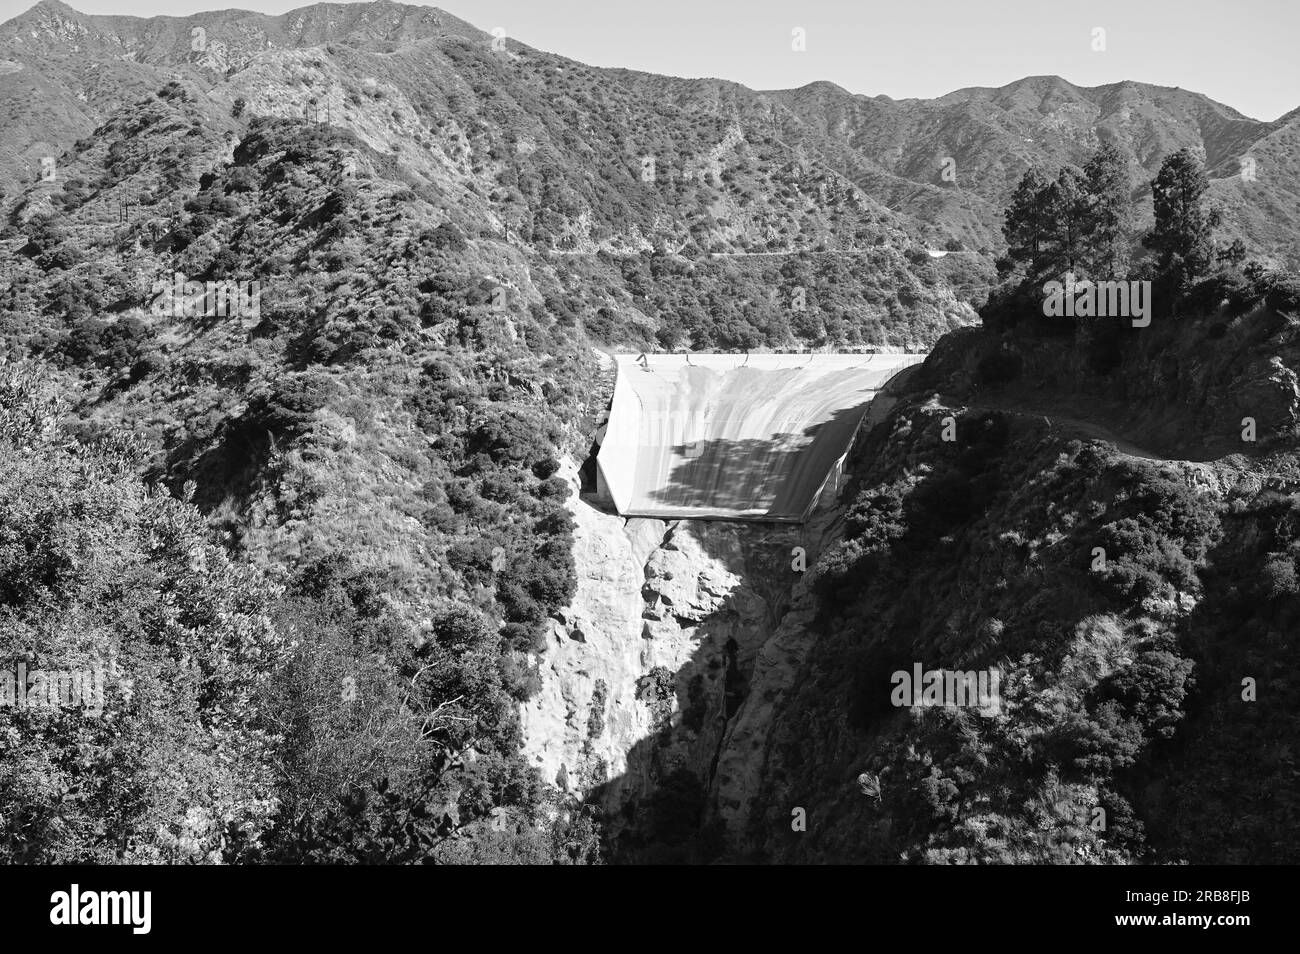 Le barrage de San Gabriel est un barrage en remblai sur la rivière San Gabriel dans le comté de Los Angeles, en Californie, dans la forêt nationale d'Angeles. Banque D'Images